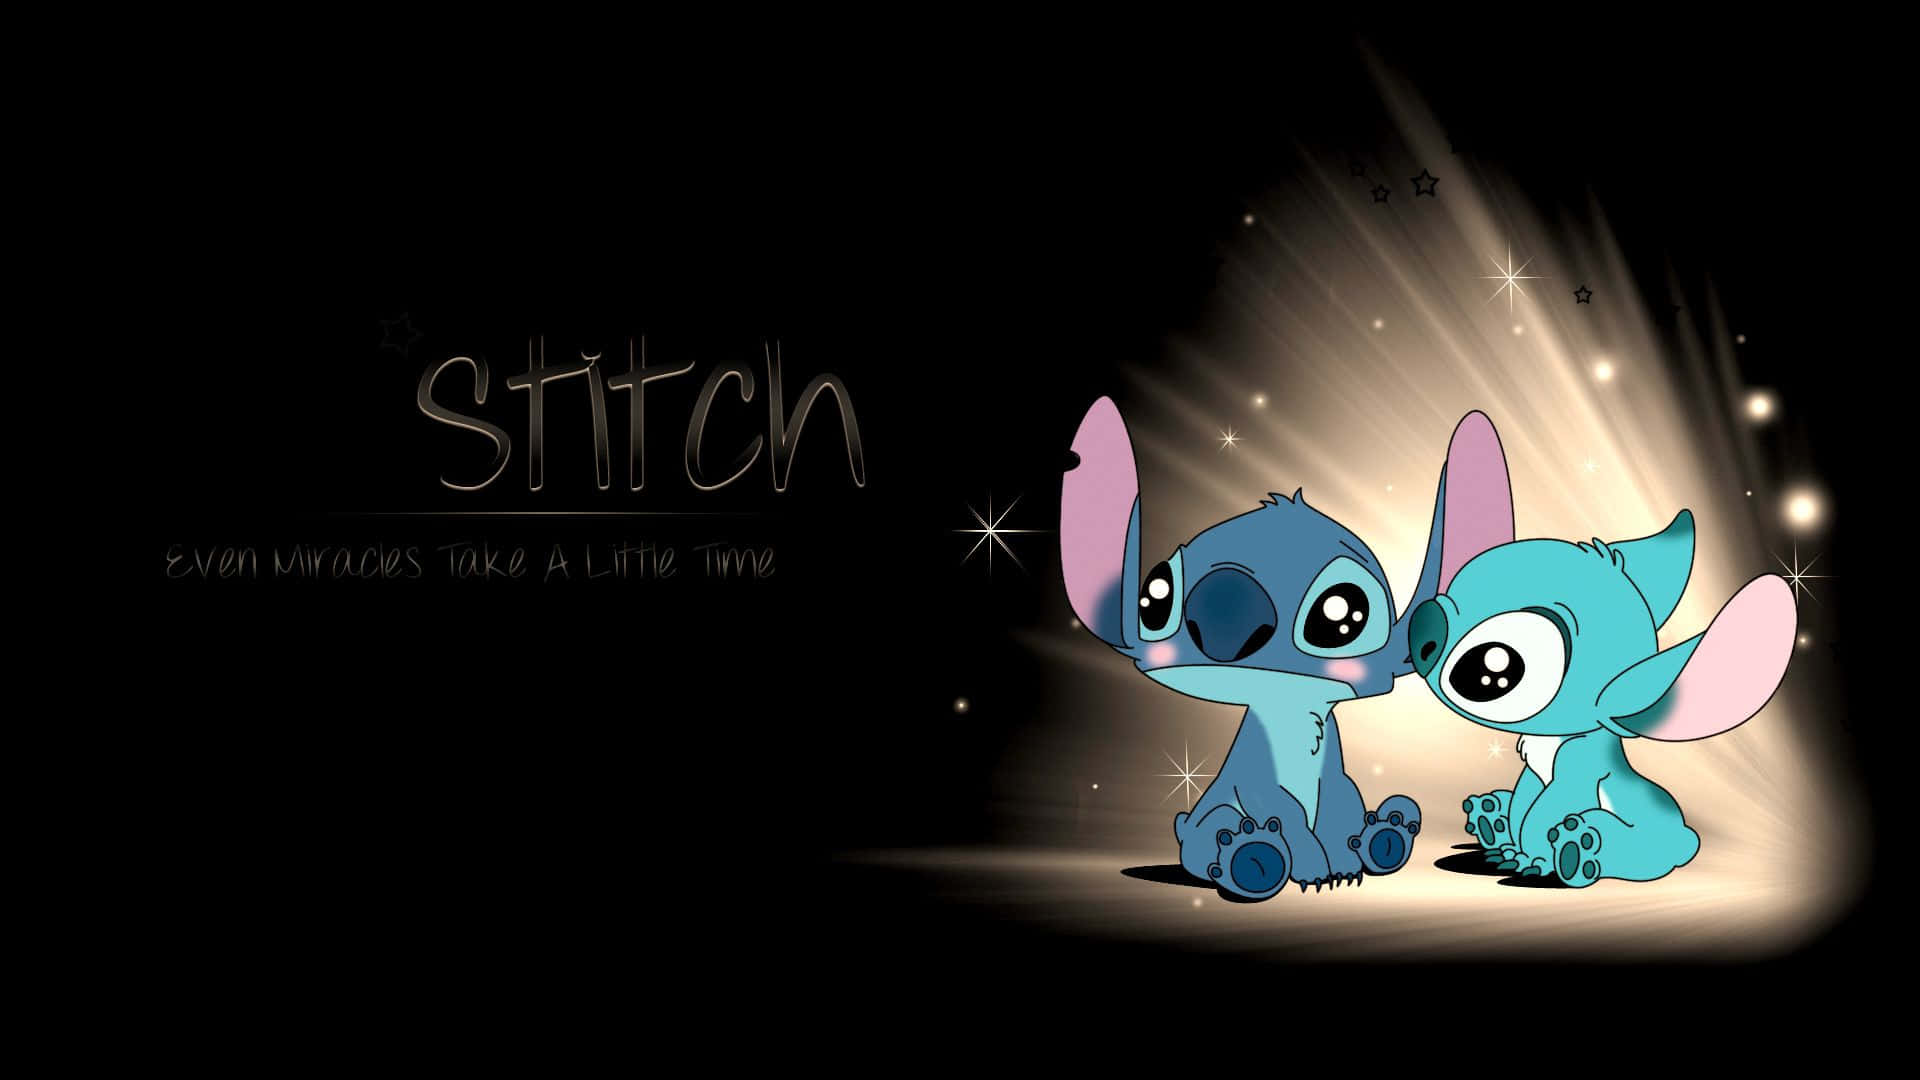 Willkommenin Einer Welt Voller Bezaubernder Unterhaltung Mit Stitch.